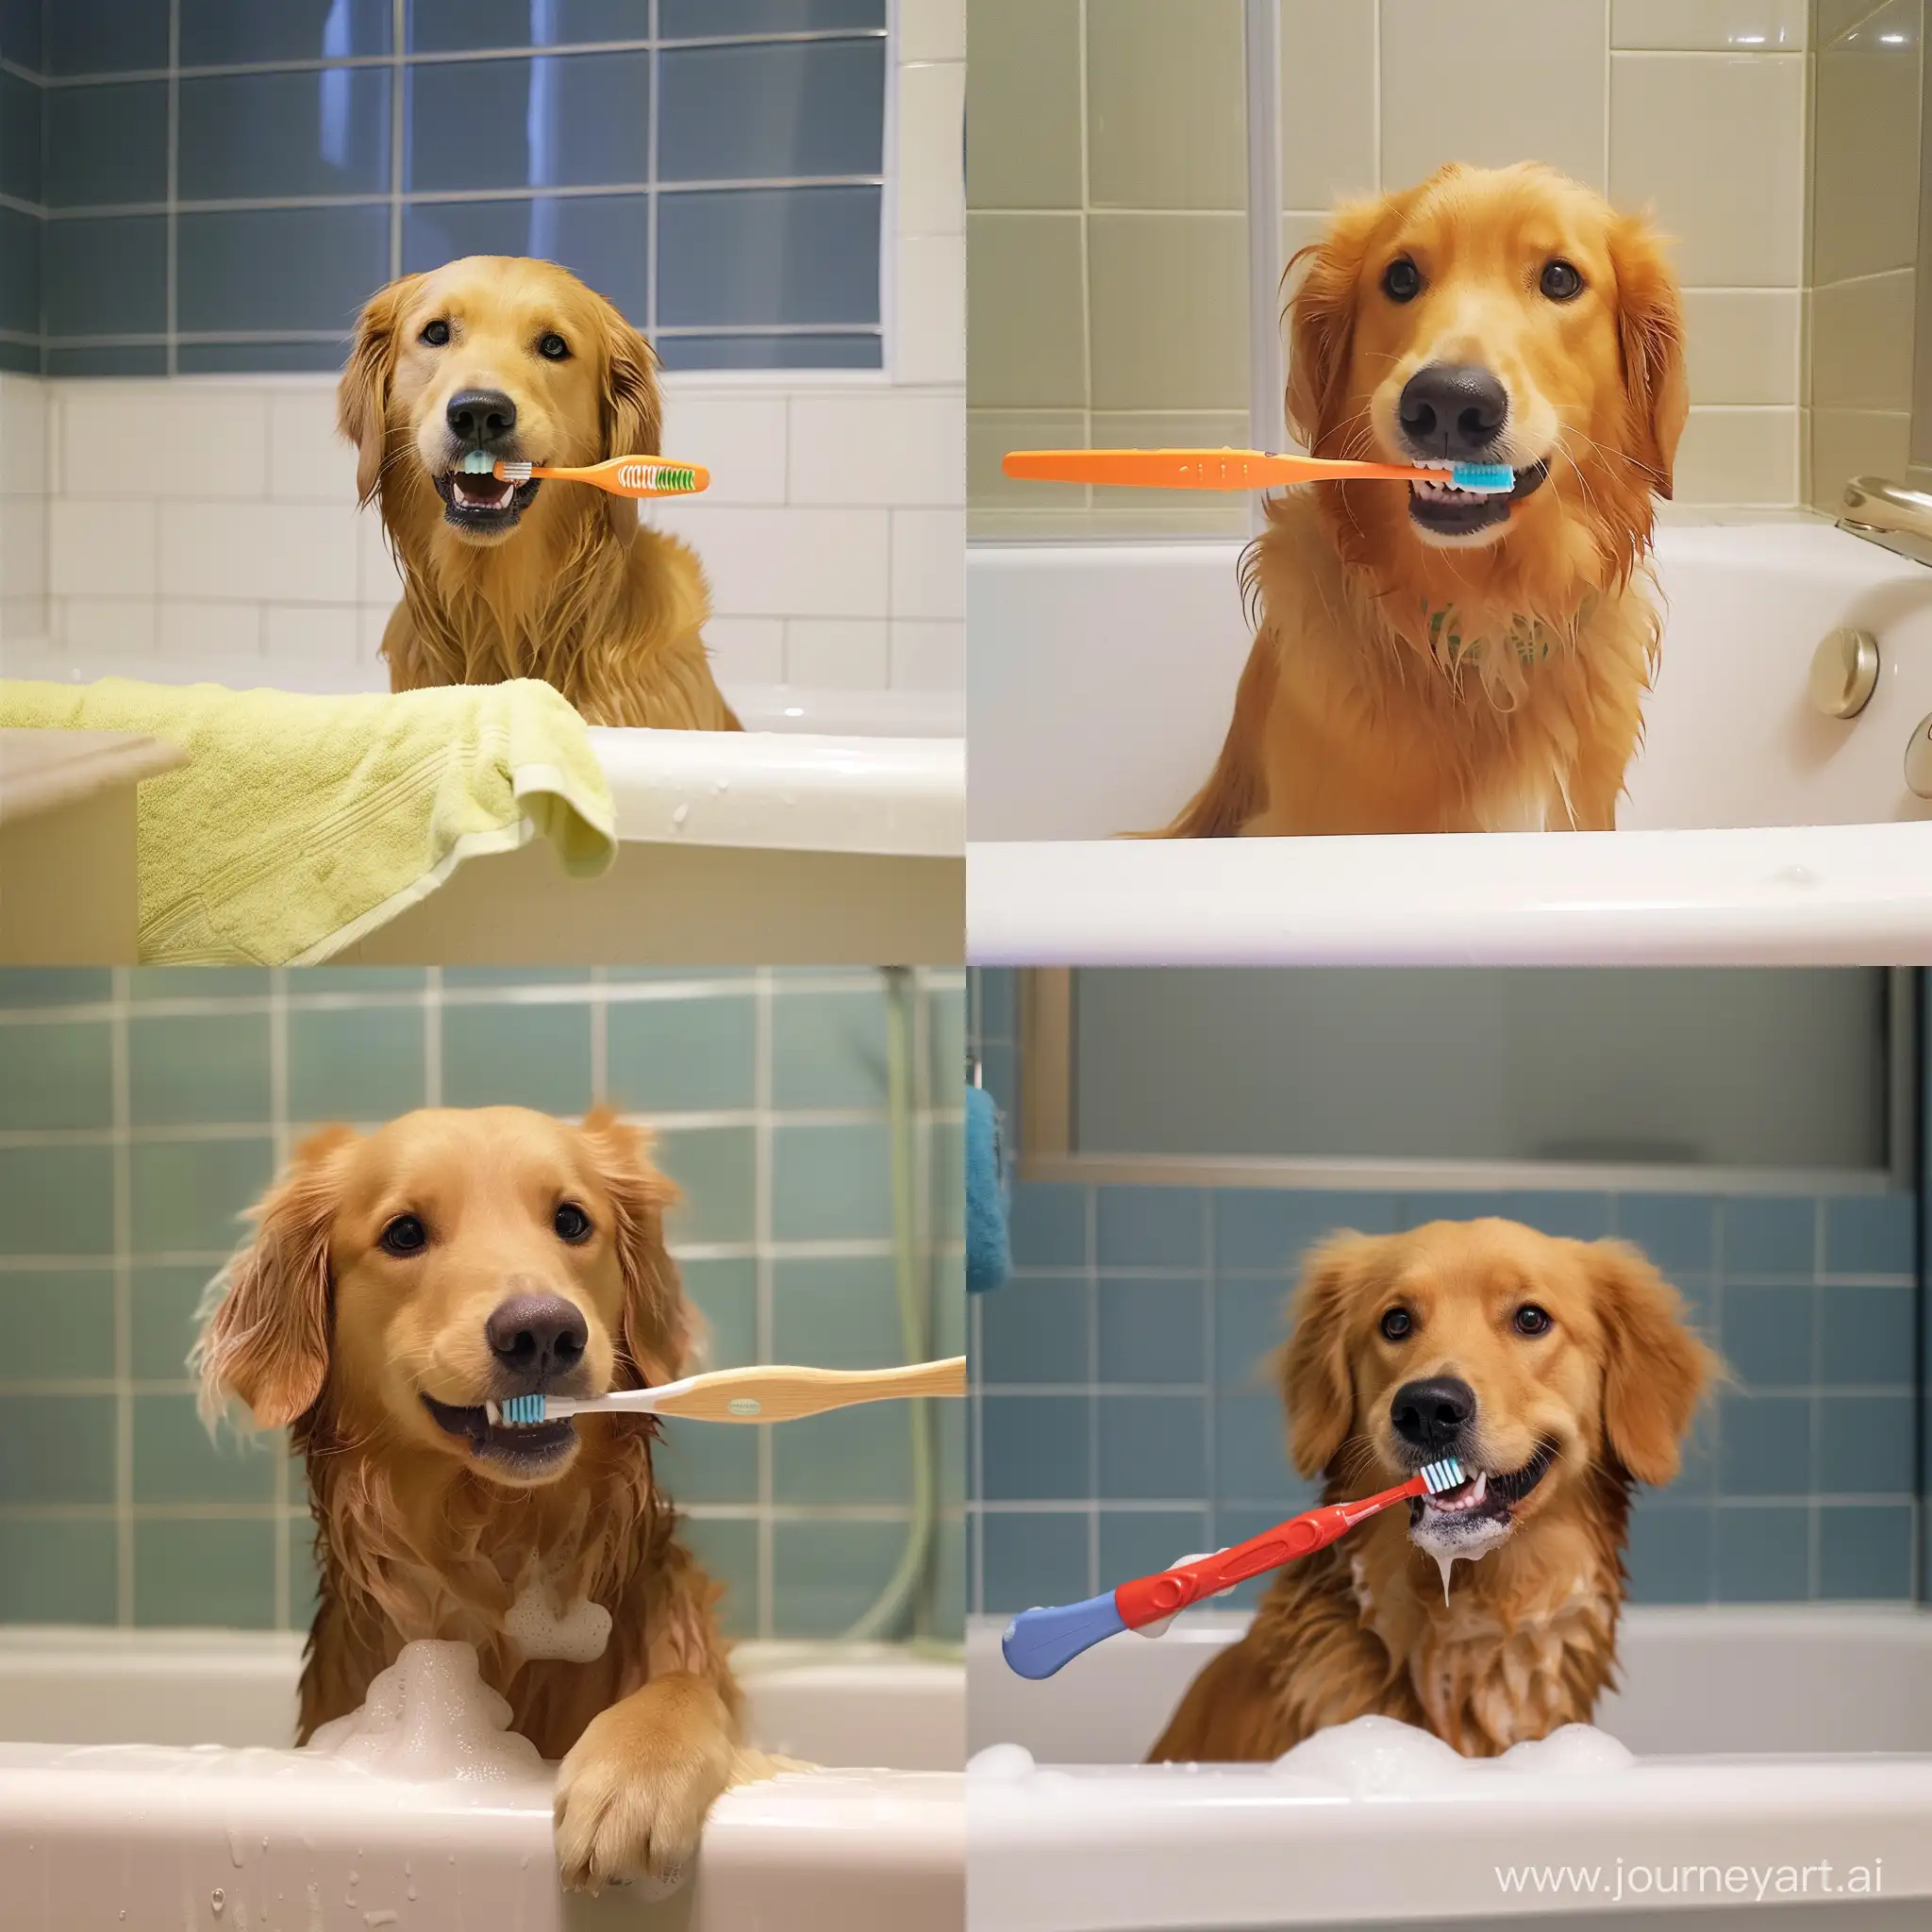 Canine-Dental-Care-Dog-Brushing-Teeth-in-Bathtub